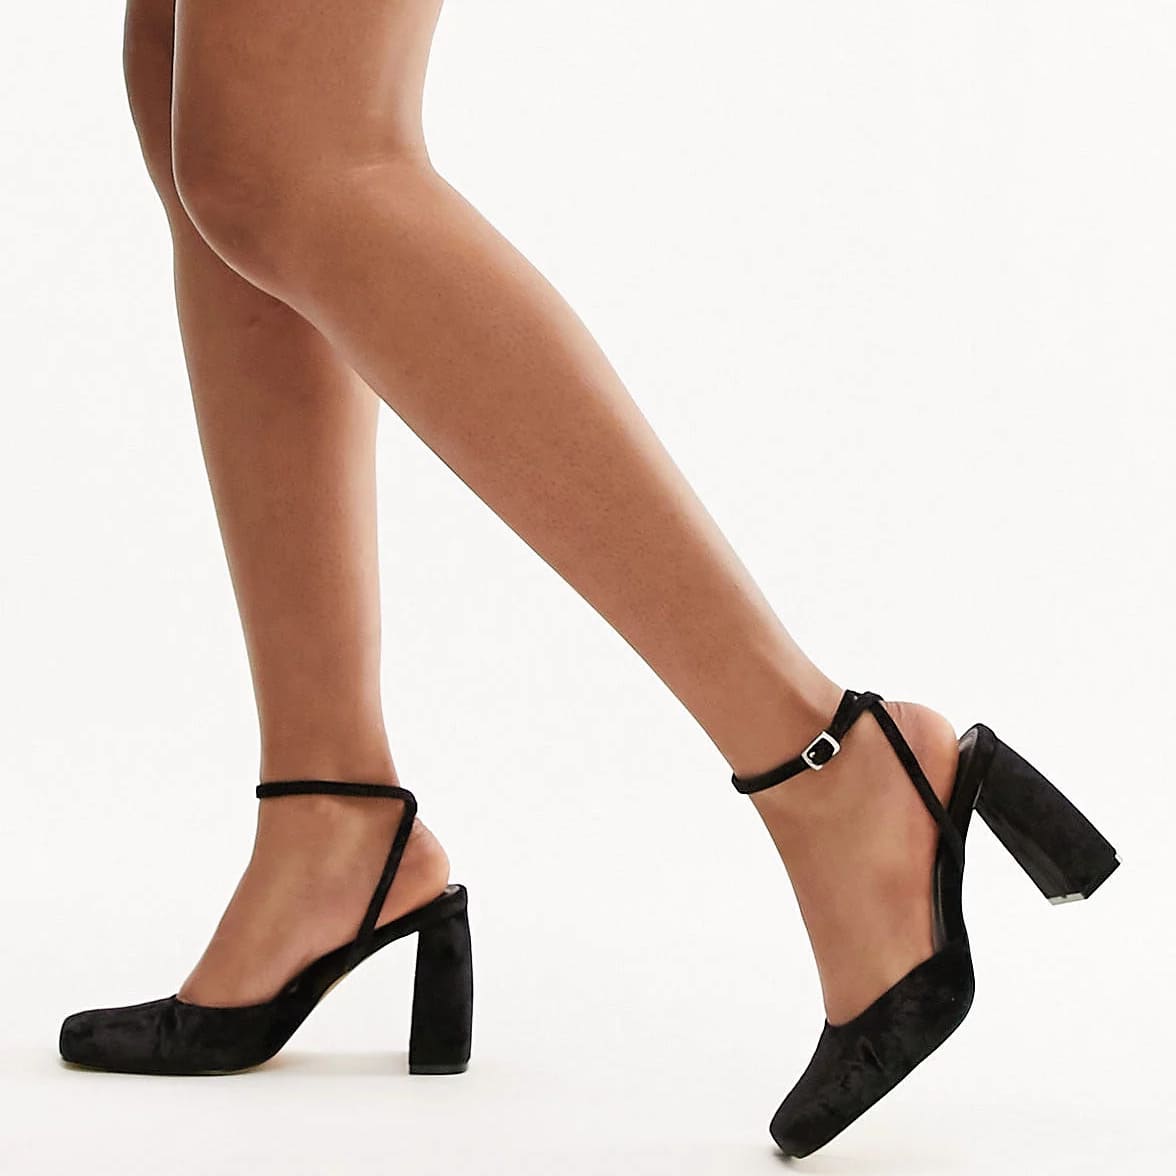 Туфли Topshop Emilia Two Part Heeled, черный женские туфли лодочки на высоком массивном каблуке с жемчугом